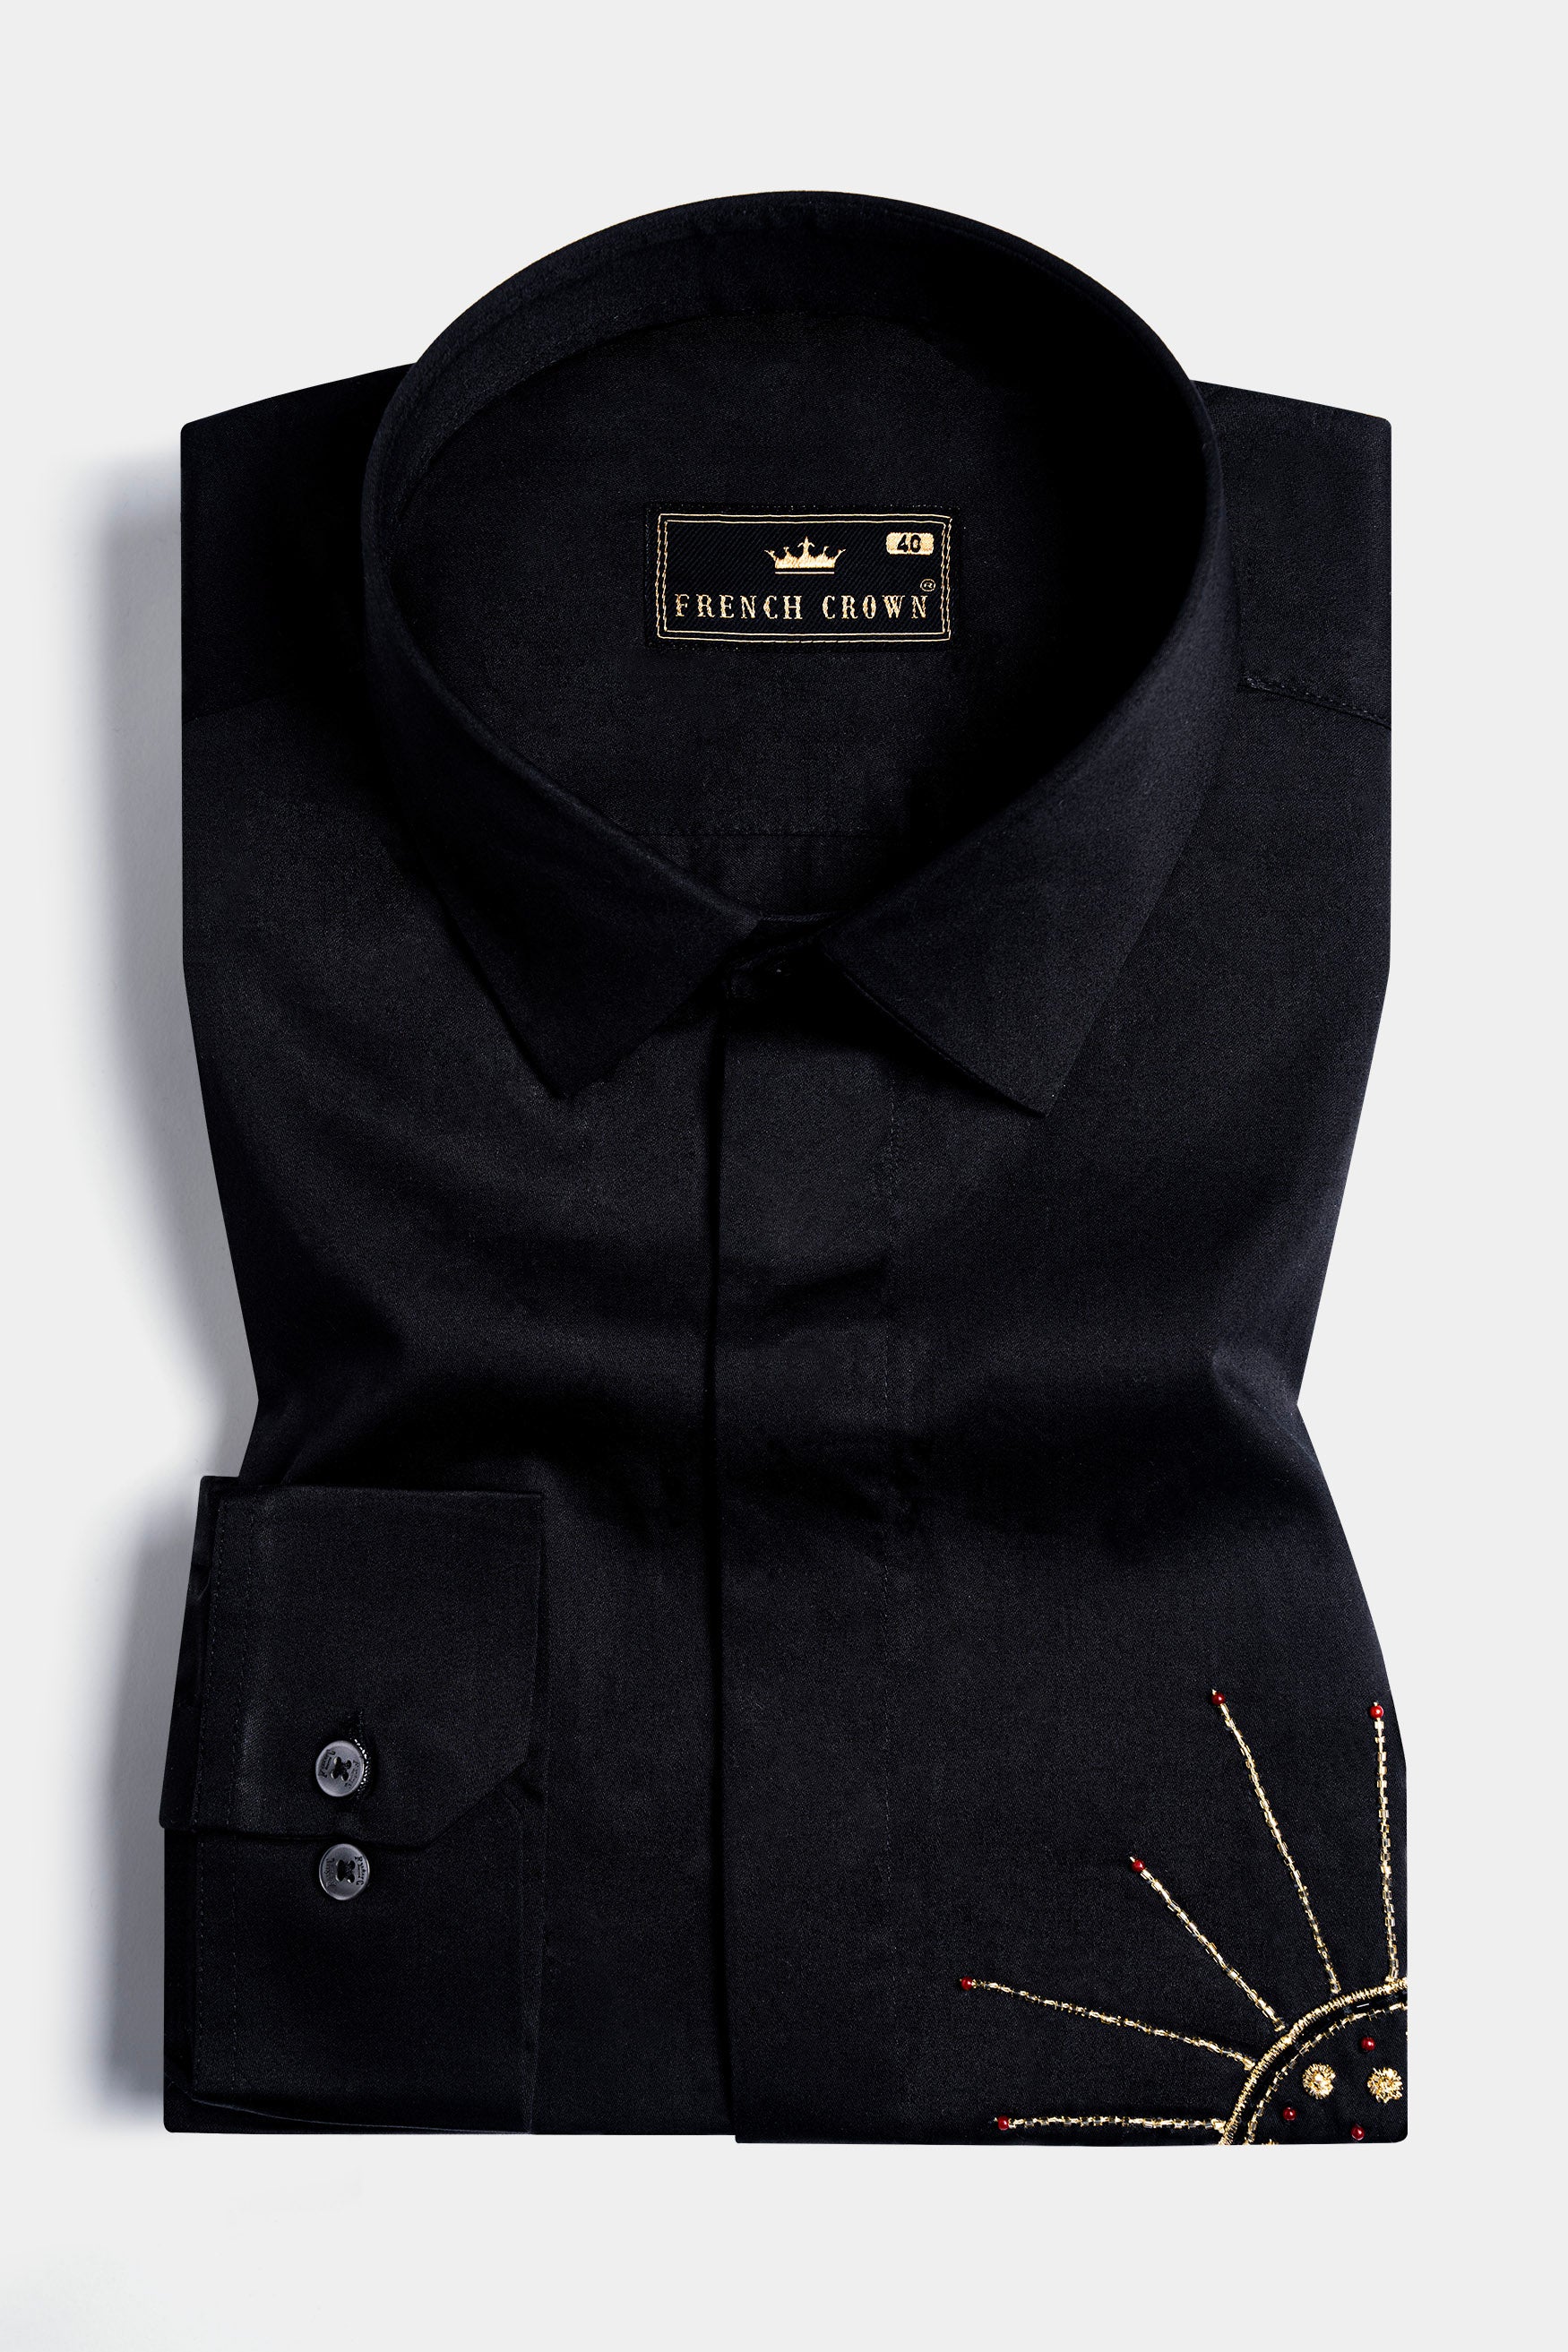 Jade Black Sun Handwork Subtle Sheen Super Soft Premium Cotton Designer Shirt